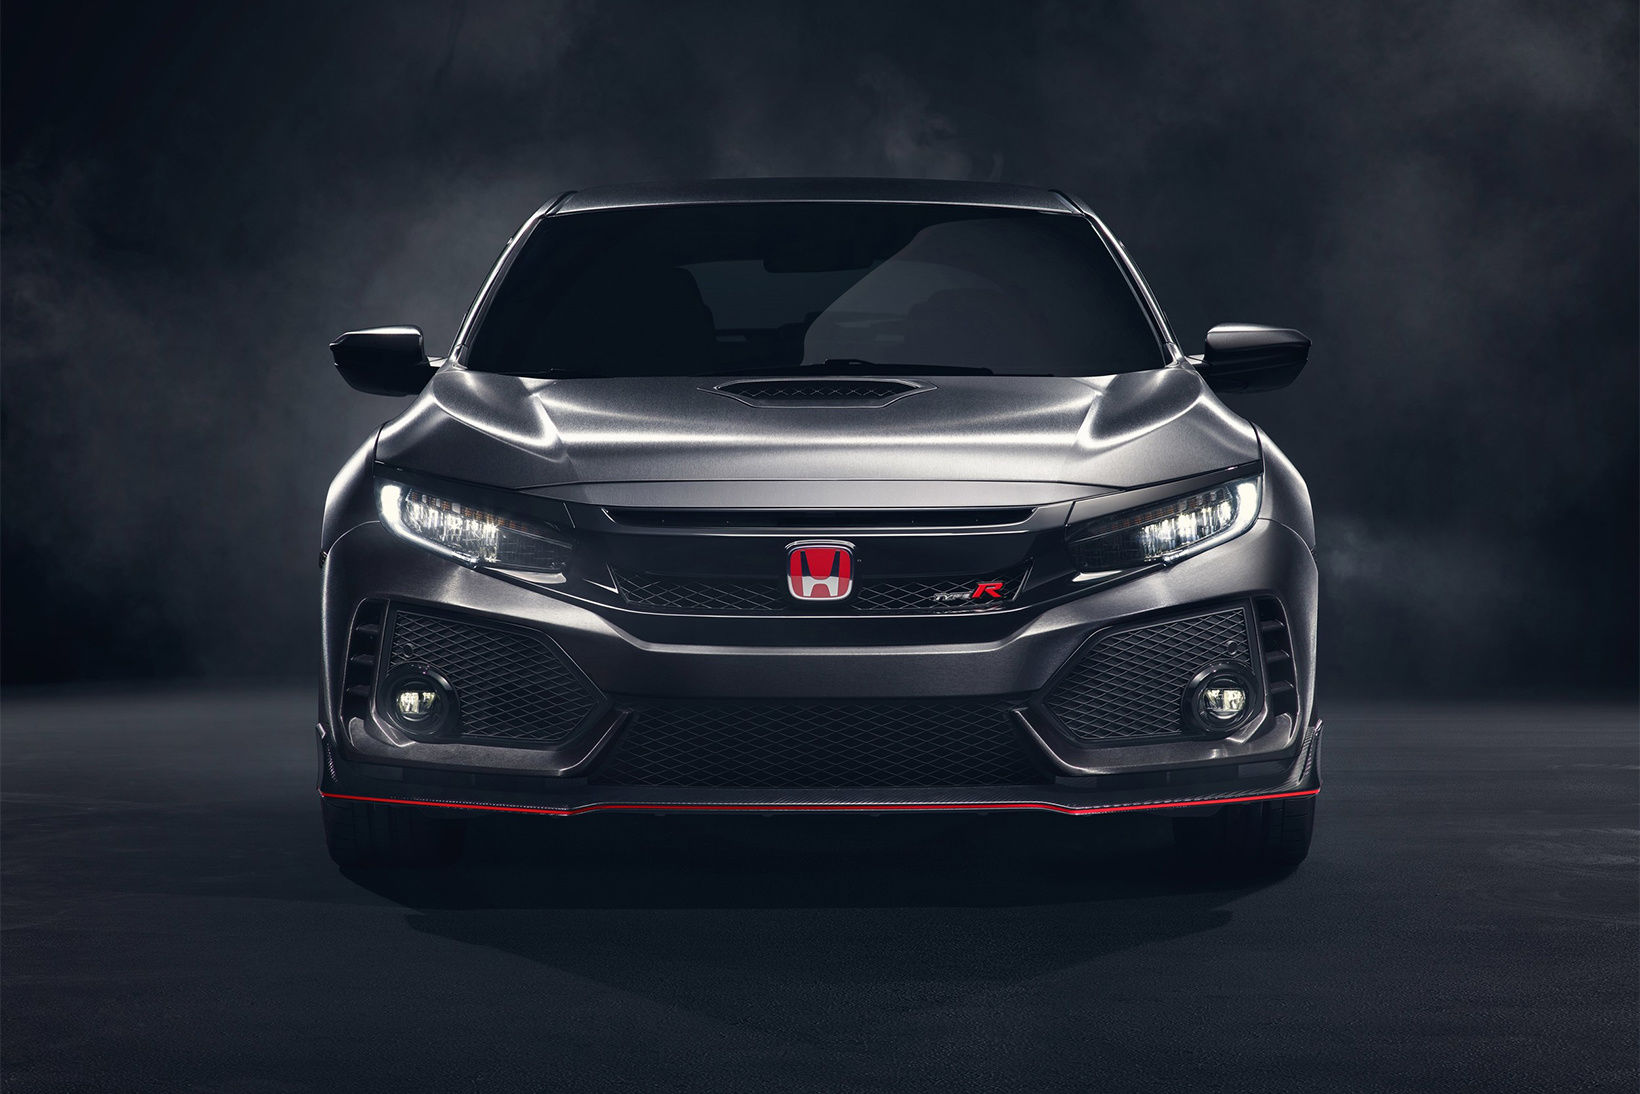 Honda unveils a new Civic Type R in Paris